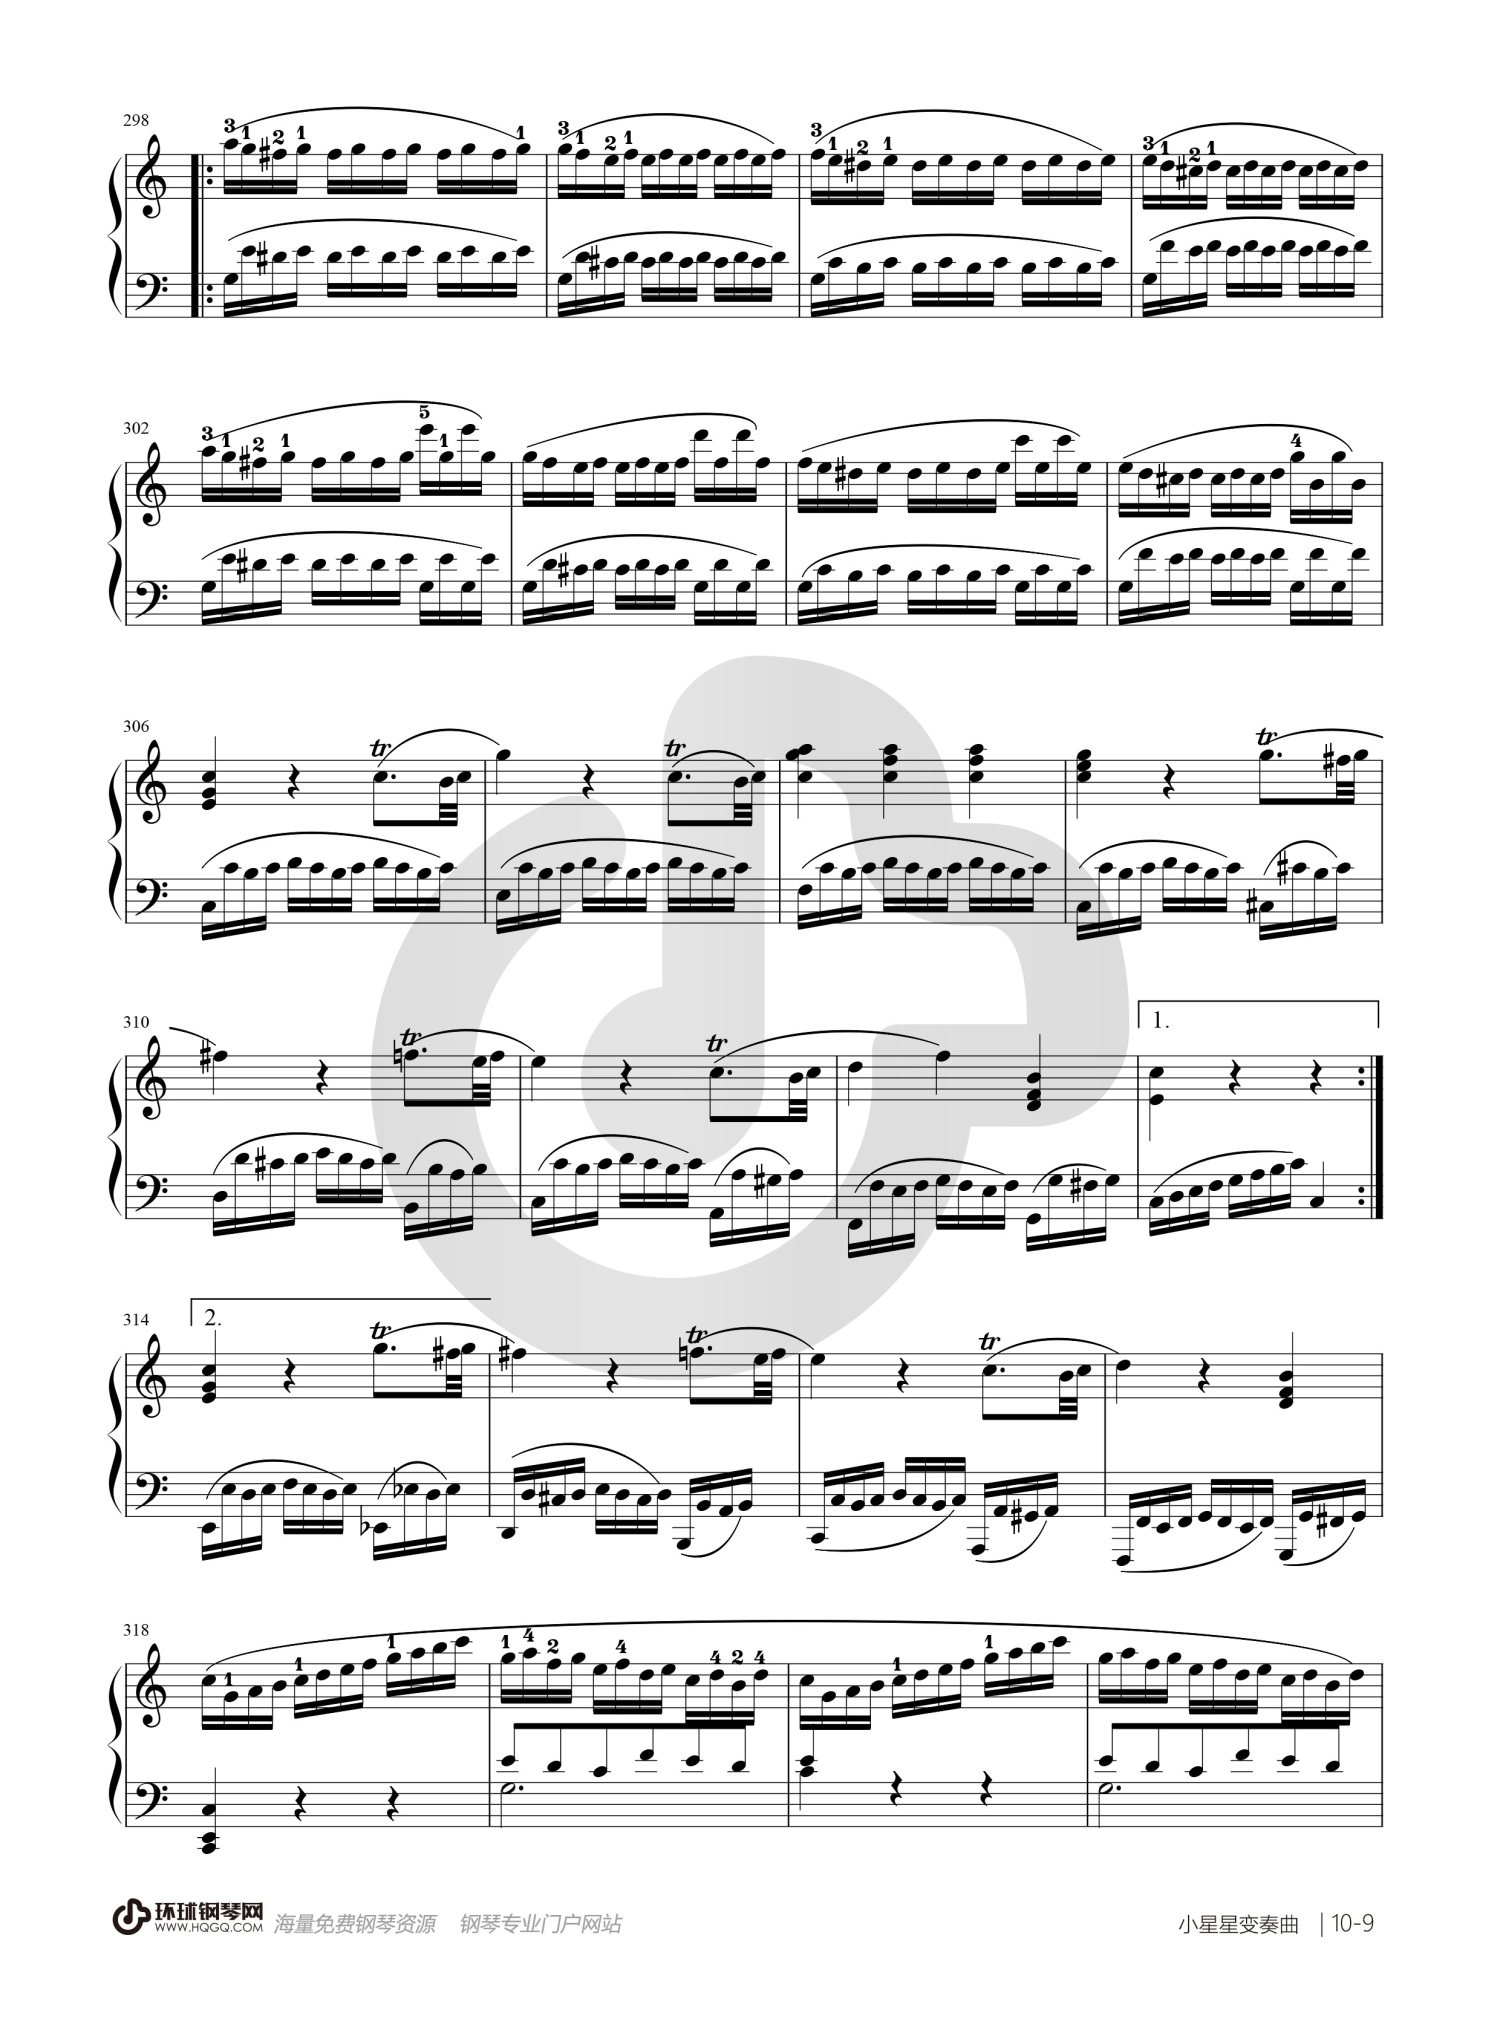 莫扎特《小星星变奏曲》钢琴谱第9张